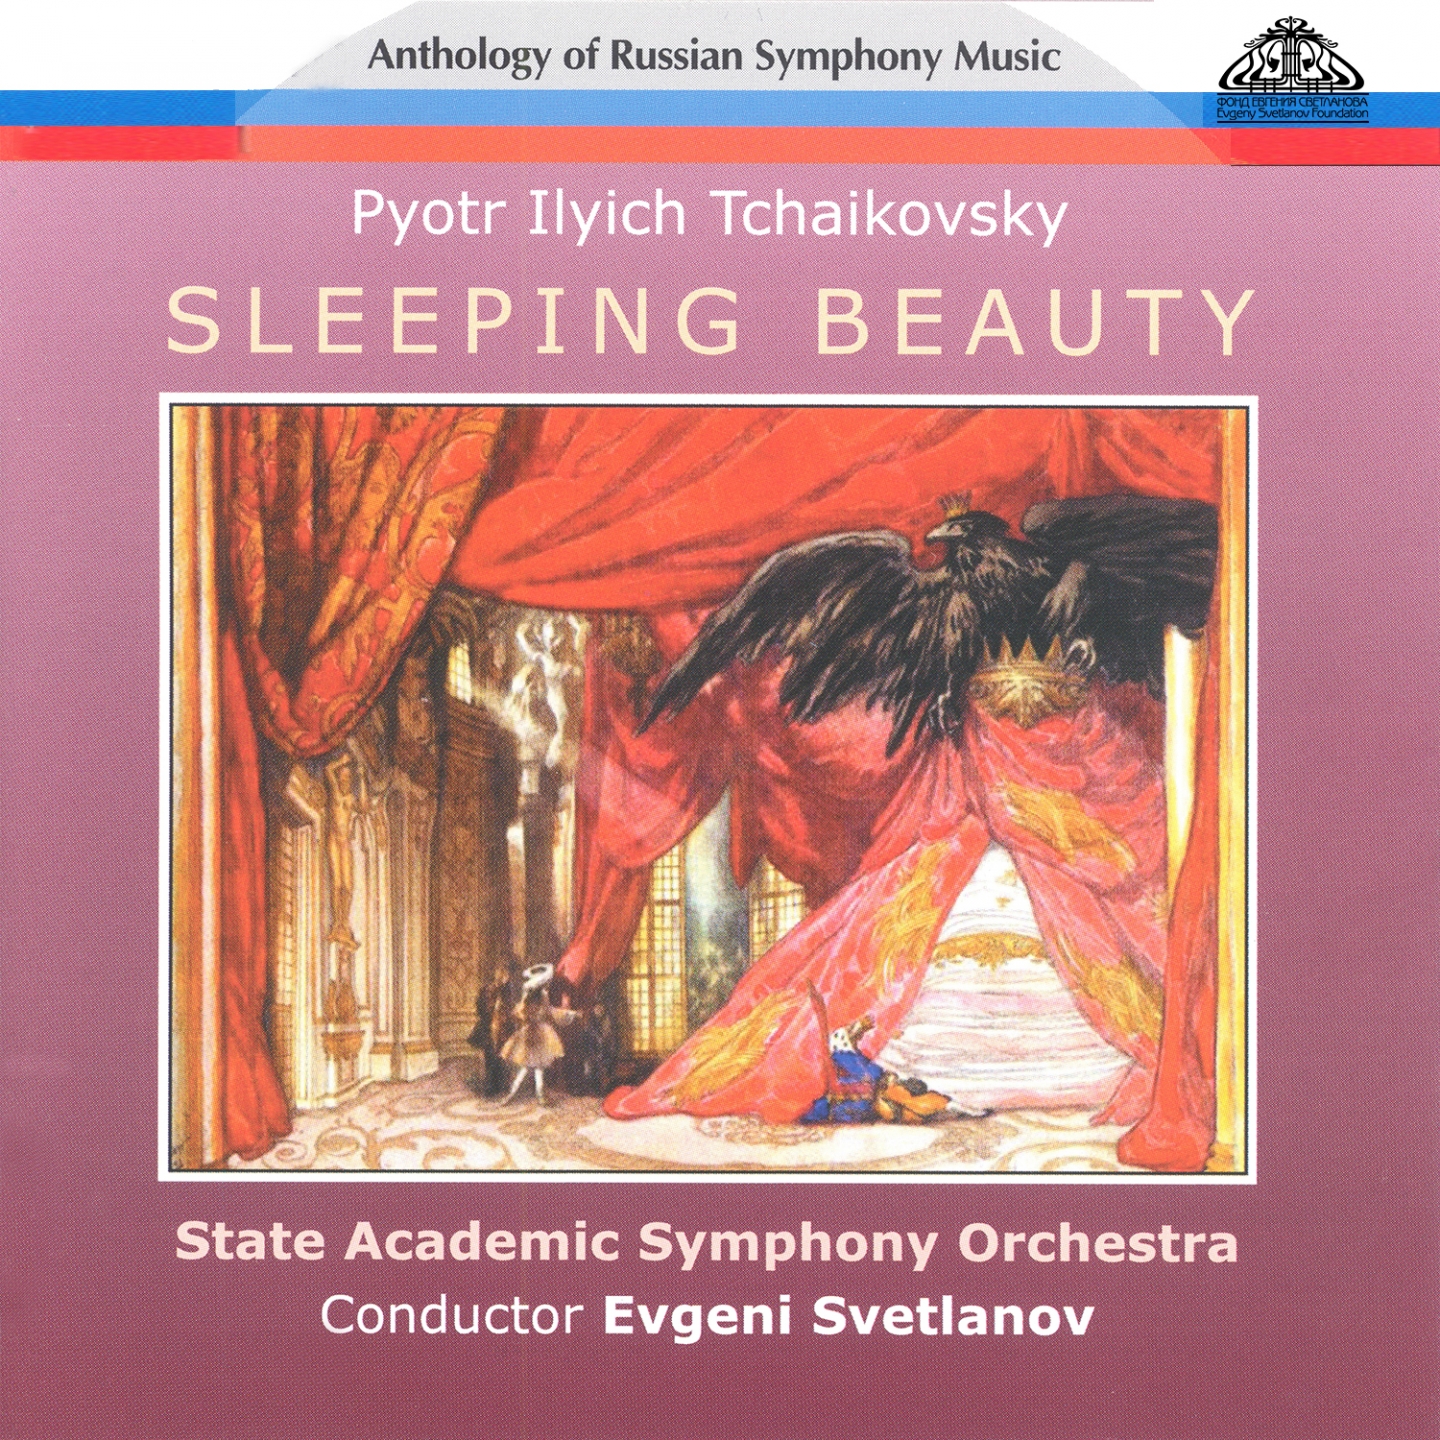 Sleeping Beauty, Op. 66, Prologue: Sce ne dansante